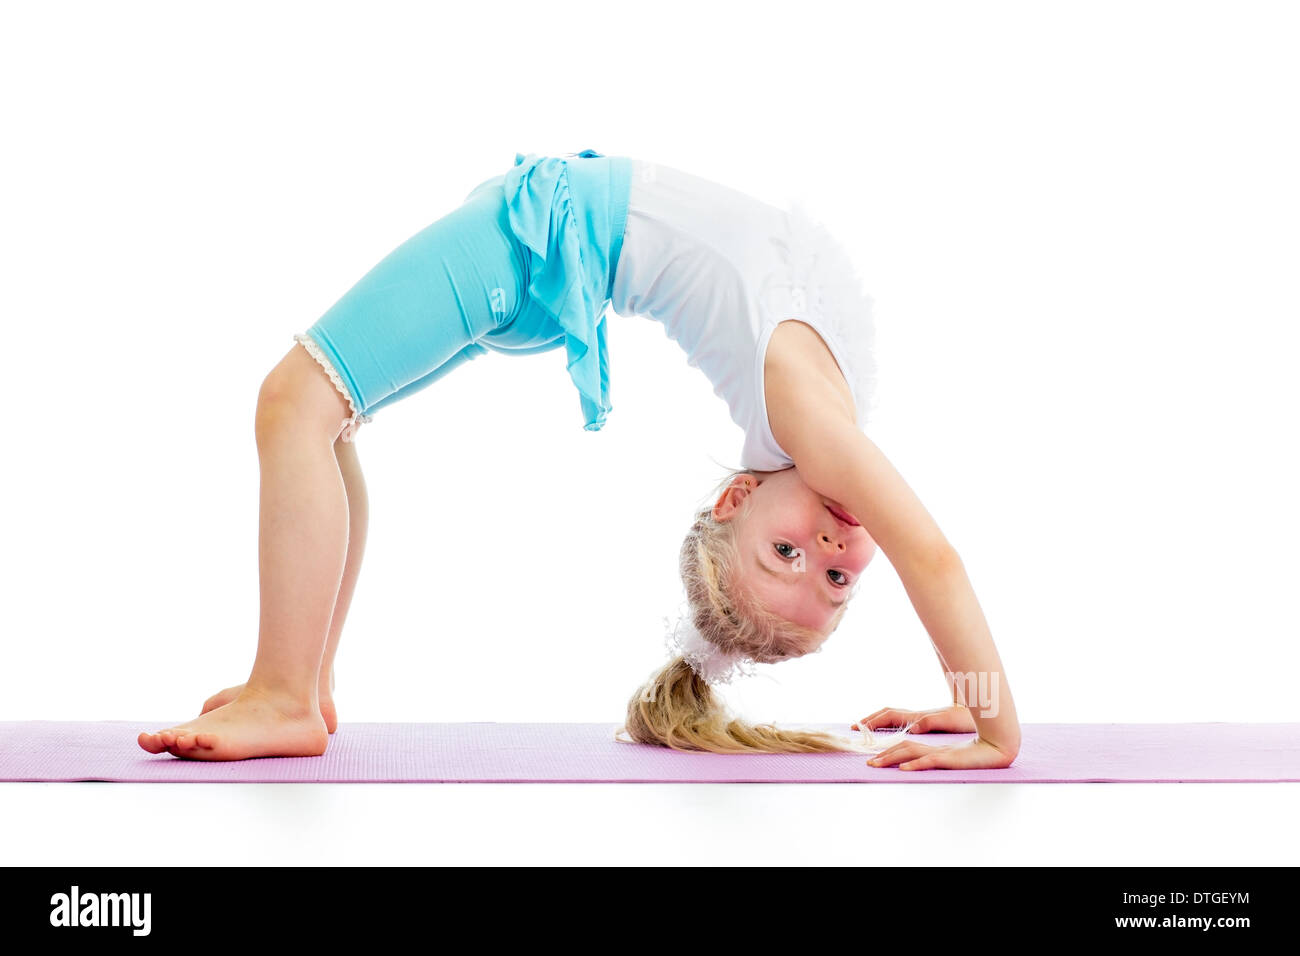 Young girl doing gymnastics Stock Photo by ©evdoha 5476252